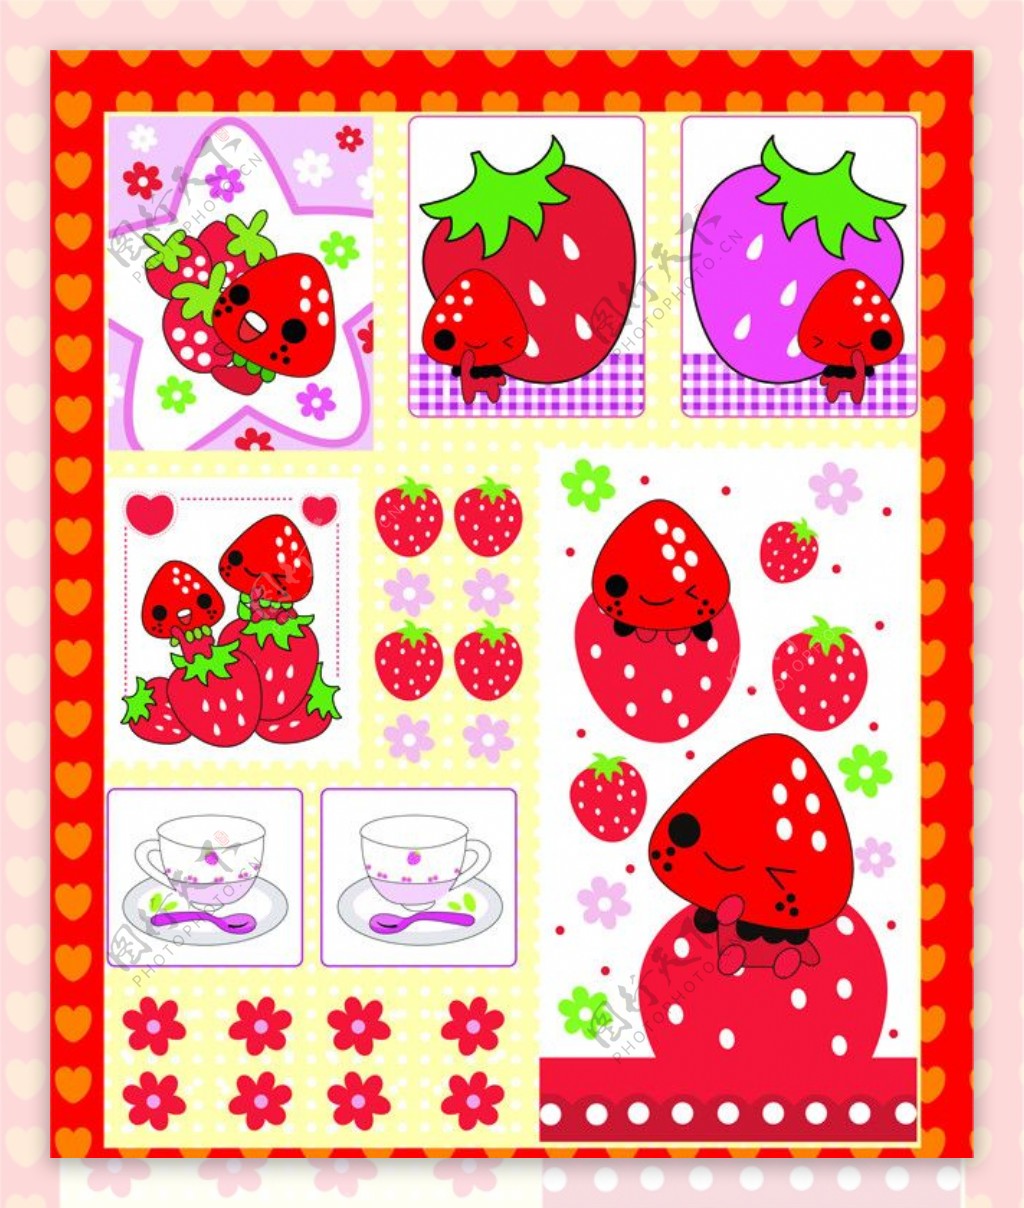 草莓小人图片